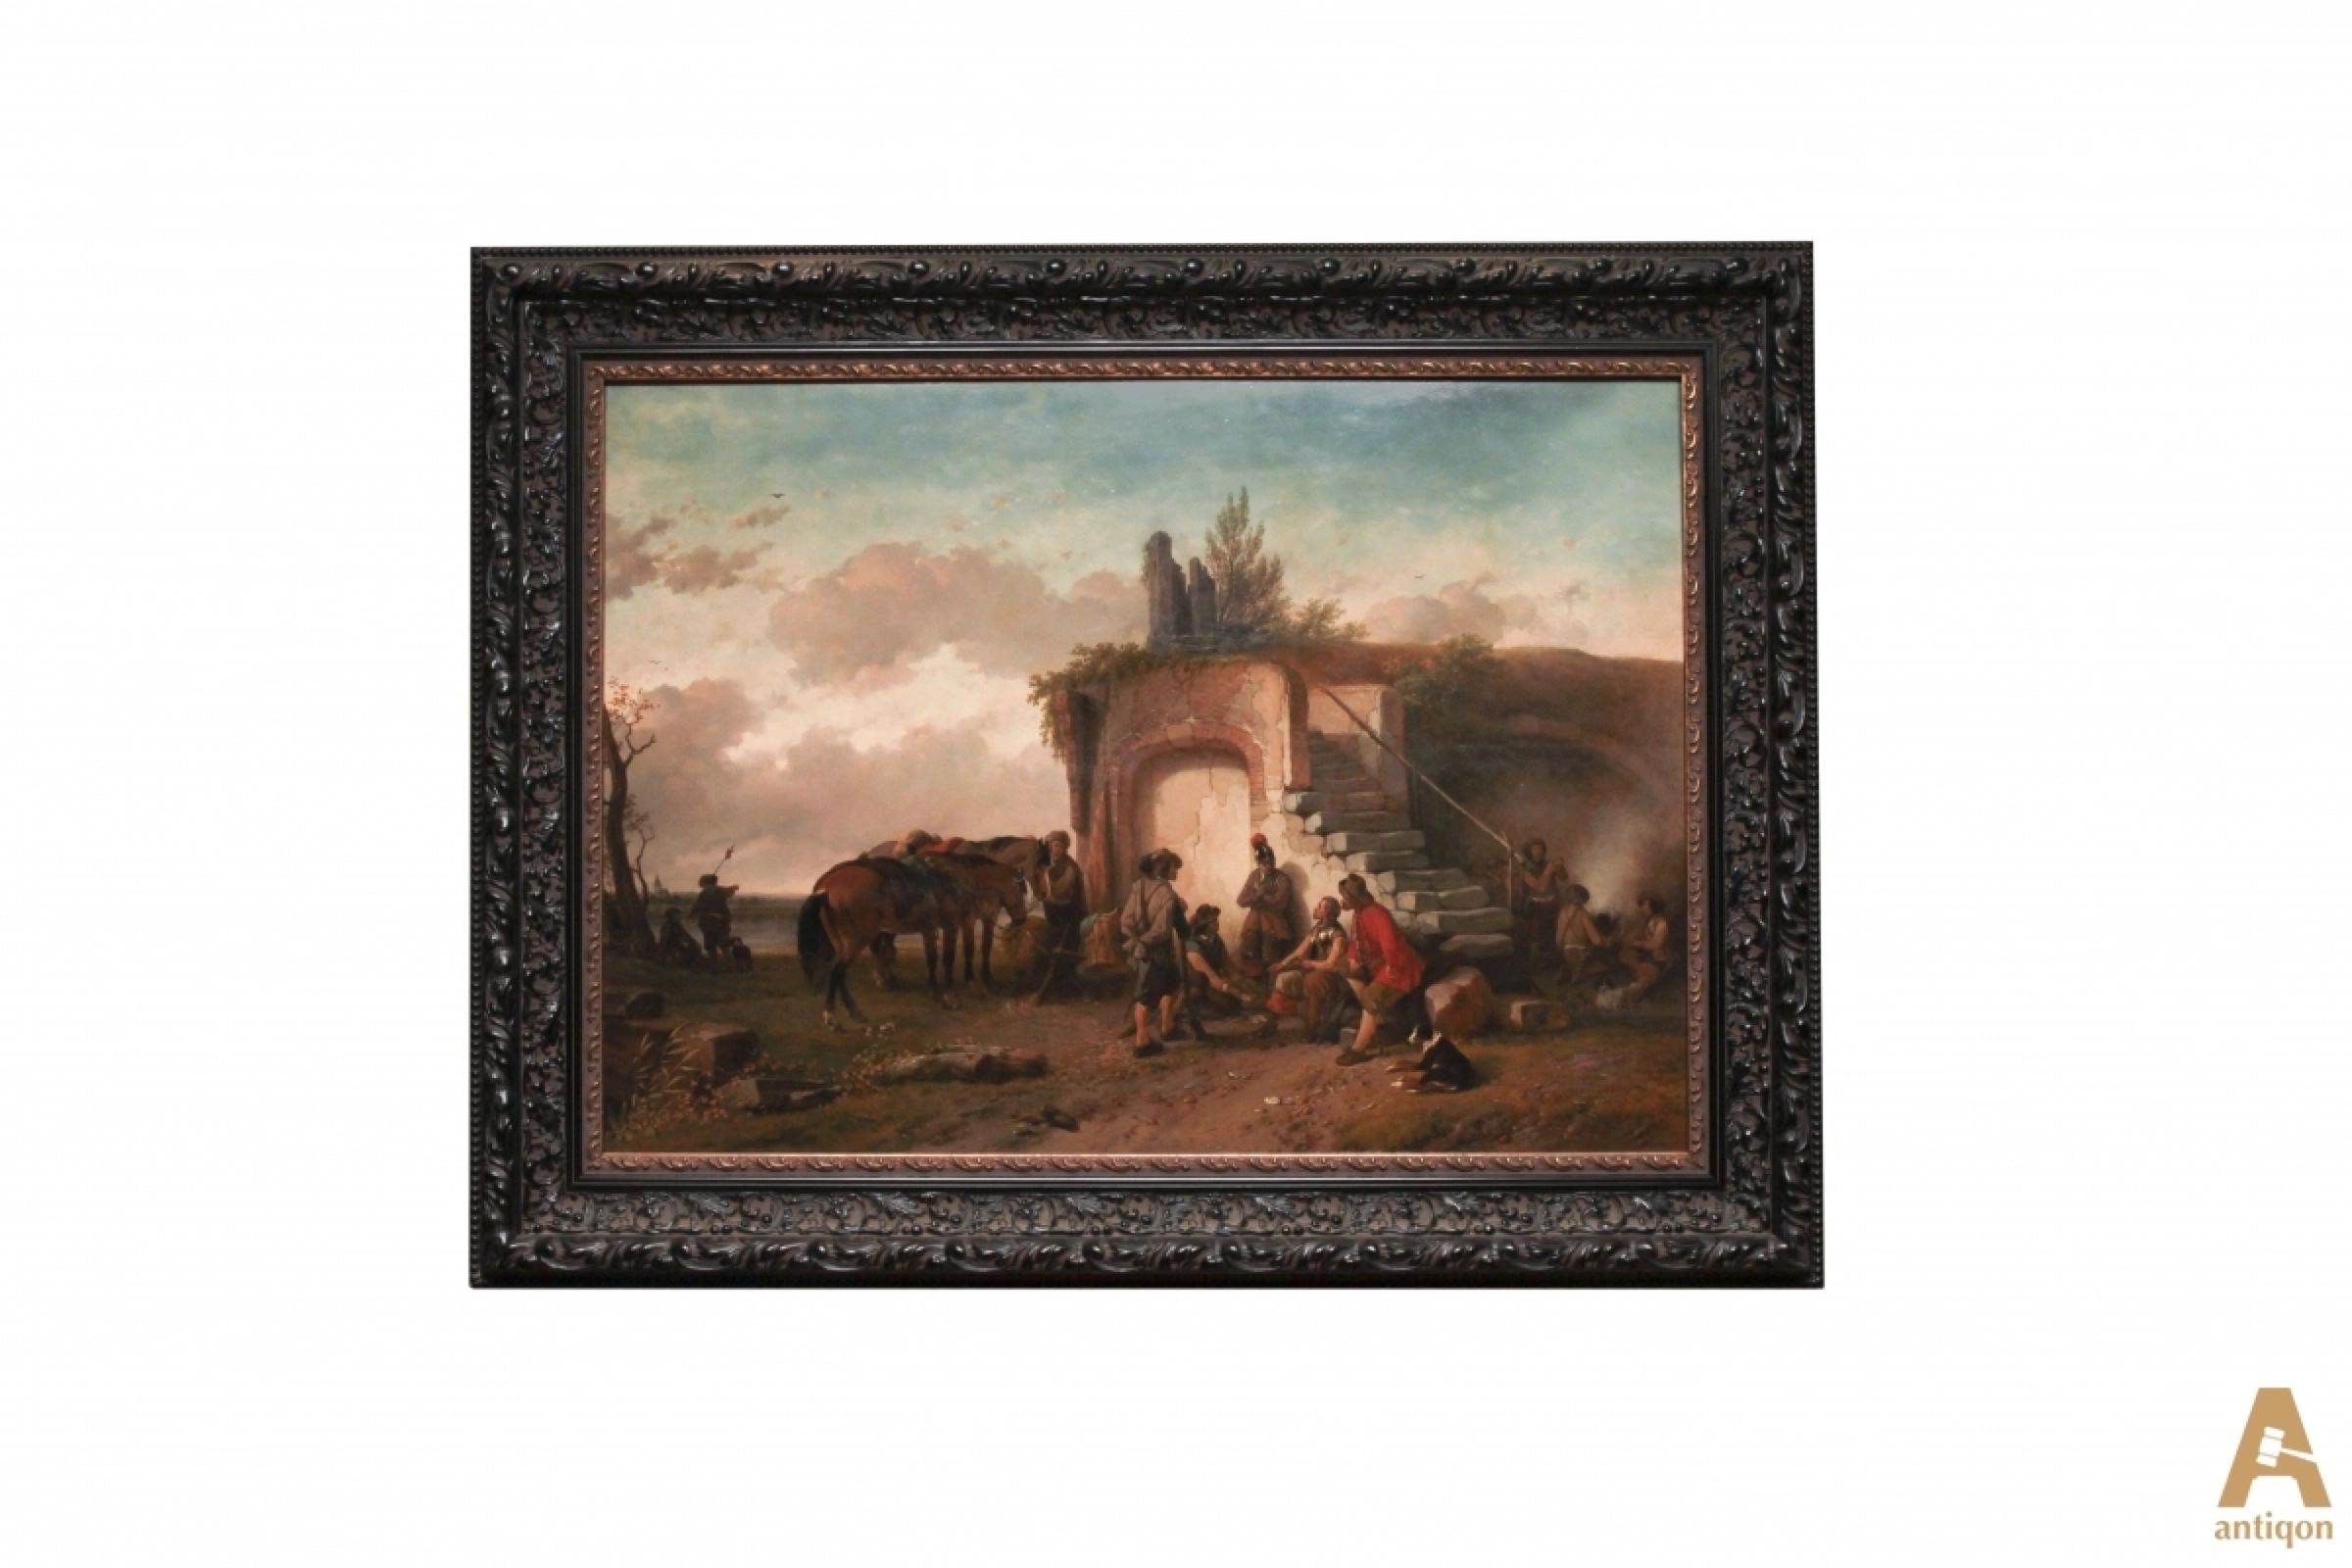 Picture-Halt-of-cavalrymen-Joseph-Jodocus-Moerenhout-1801-1875-